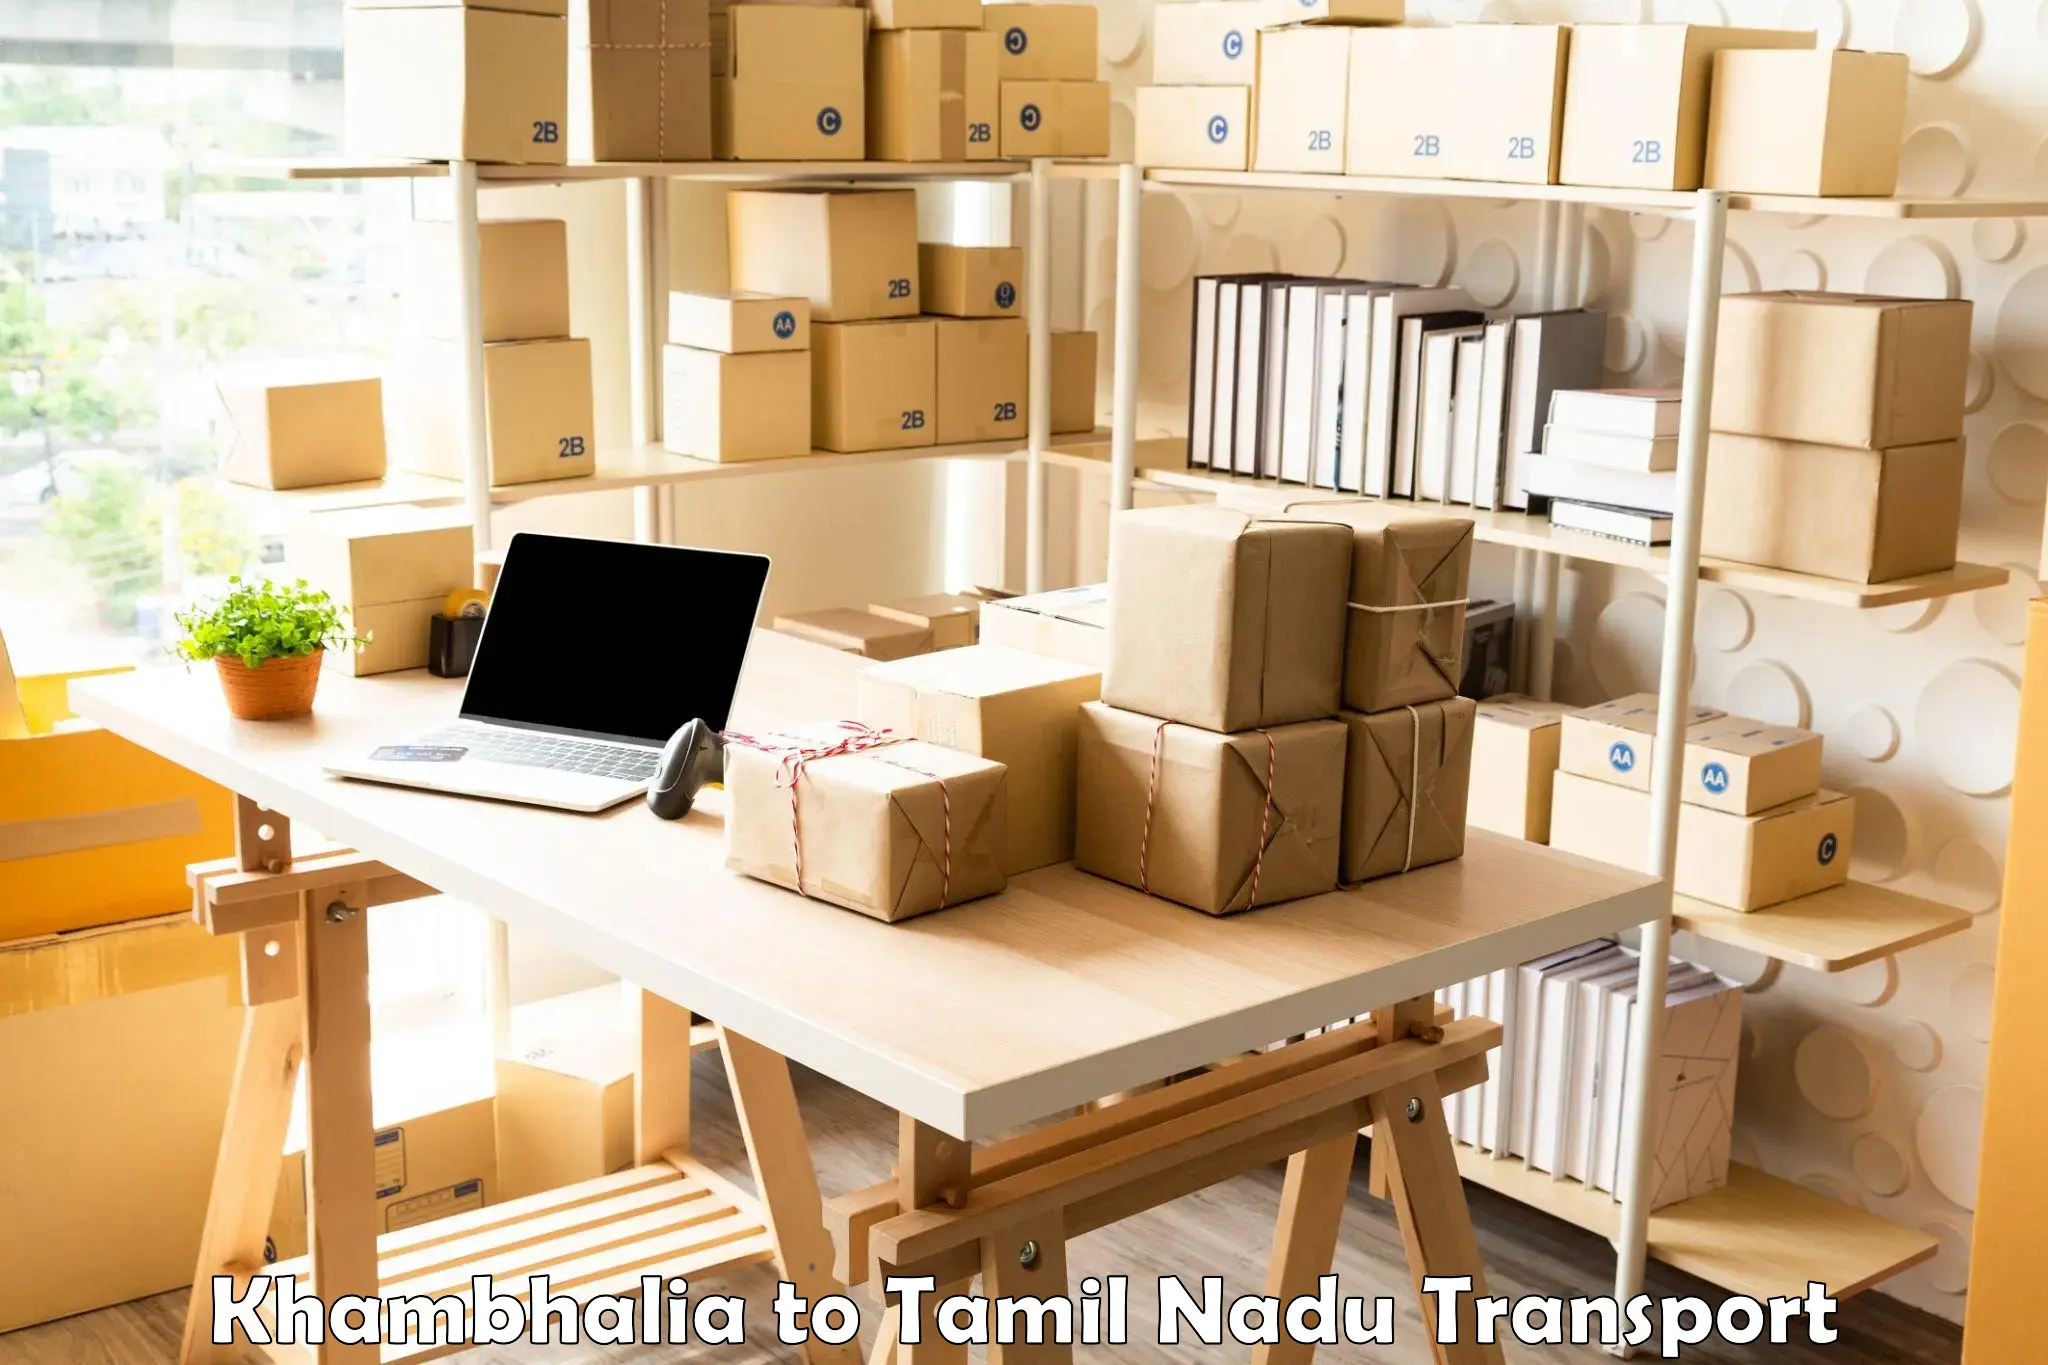 Cargo transportation services Khambhalia to Palani